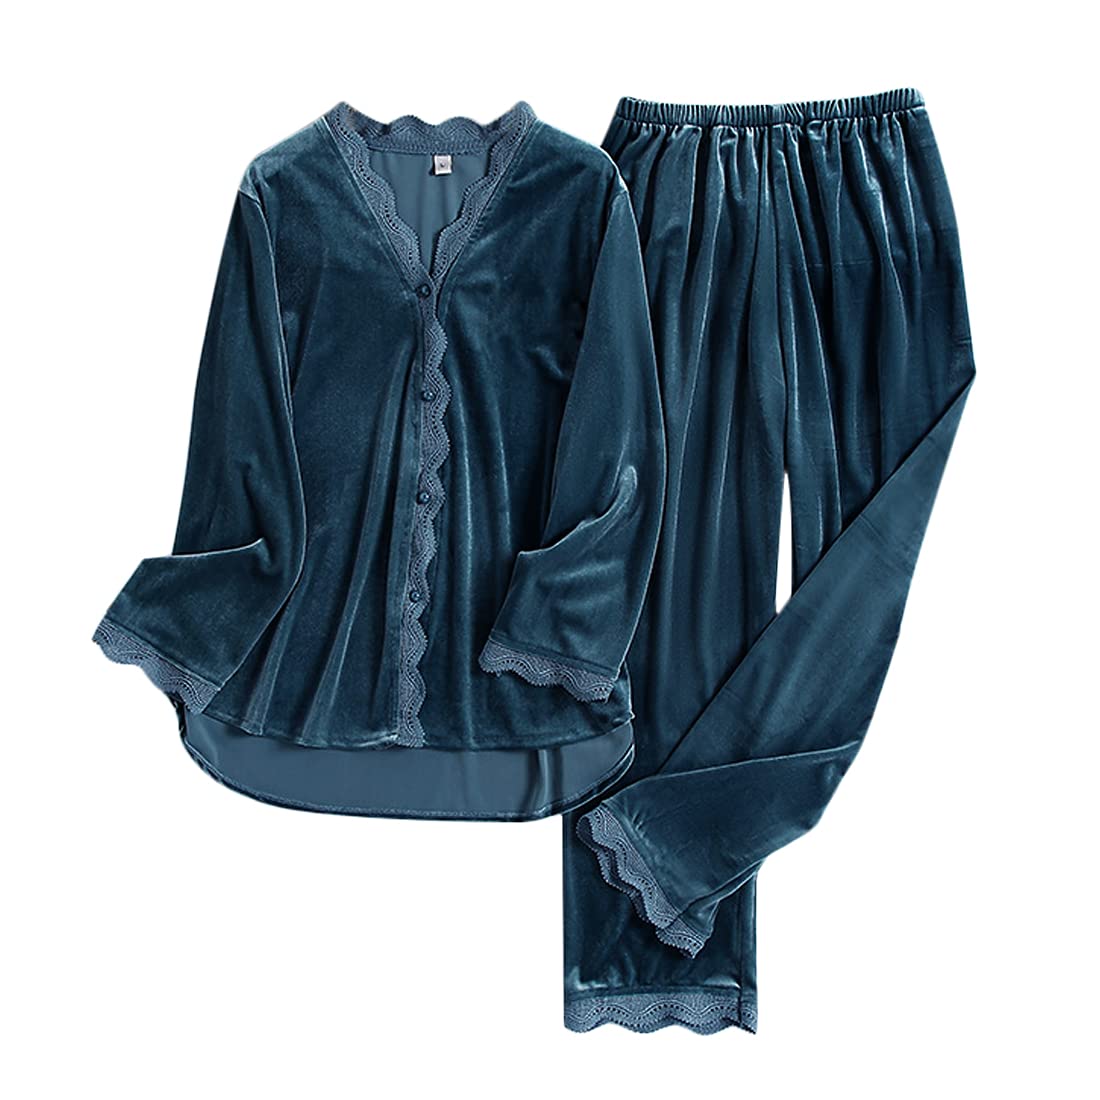 DEBAIJIA Damen Pyjama Nachtrobe Schlafanzug 2 PCS Winter Gold Samt Frauen Schlafkleid Weiblich Bademantel Bequem Warm Hausmantel (Blau Grau-XL)